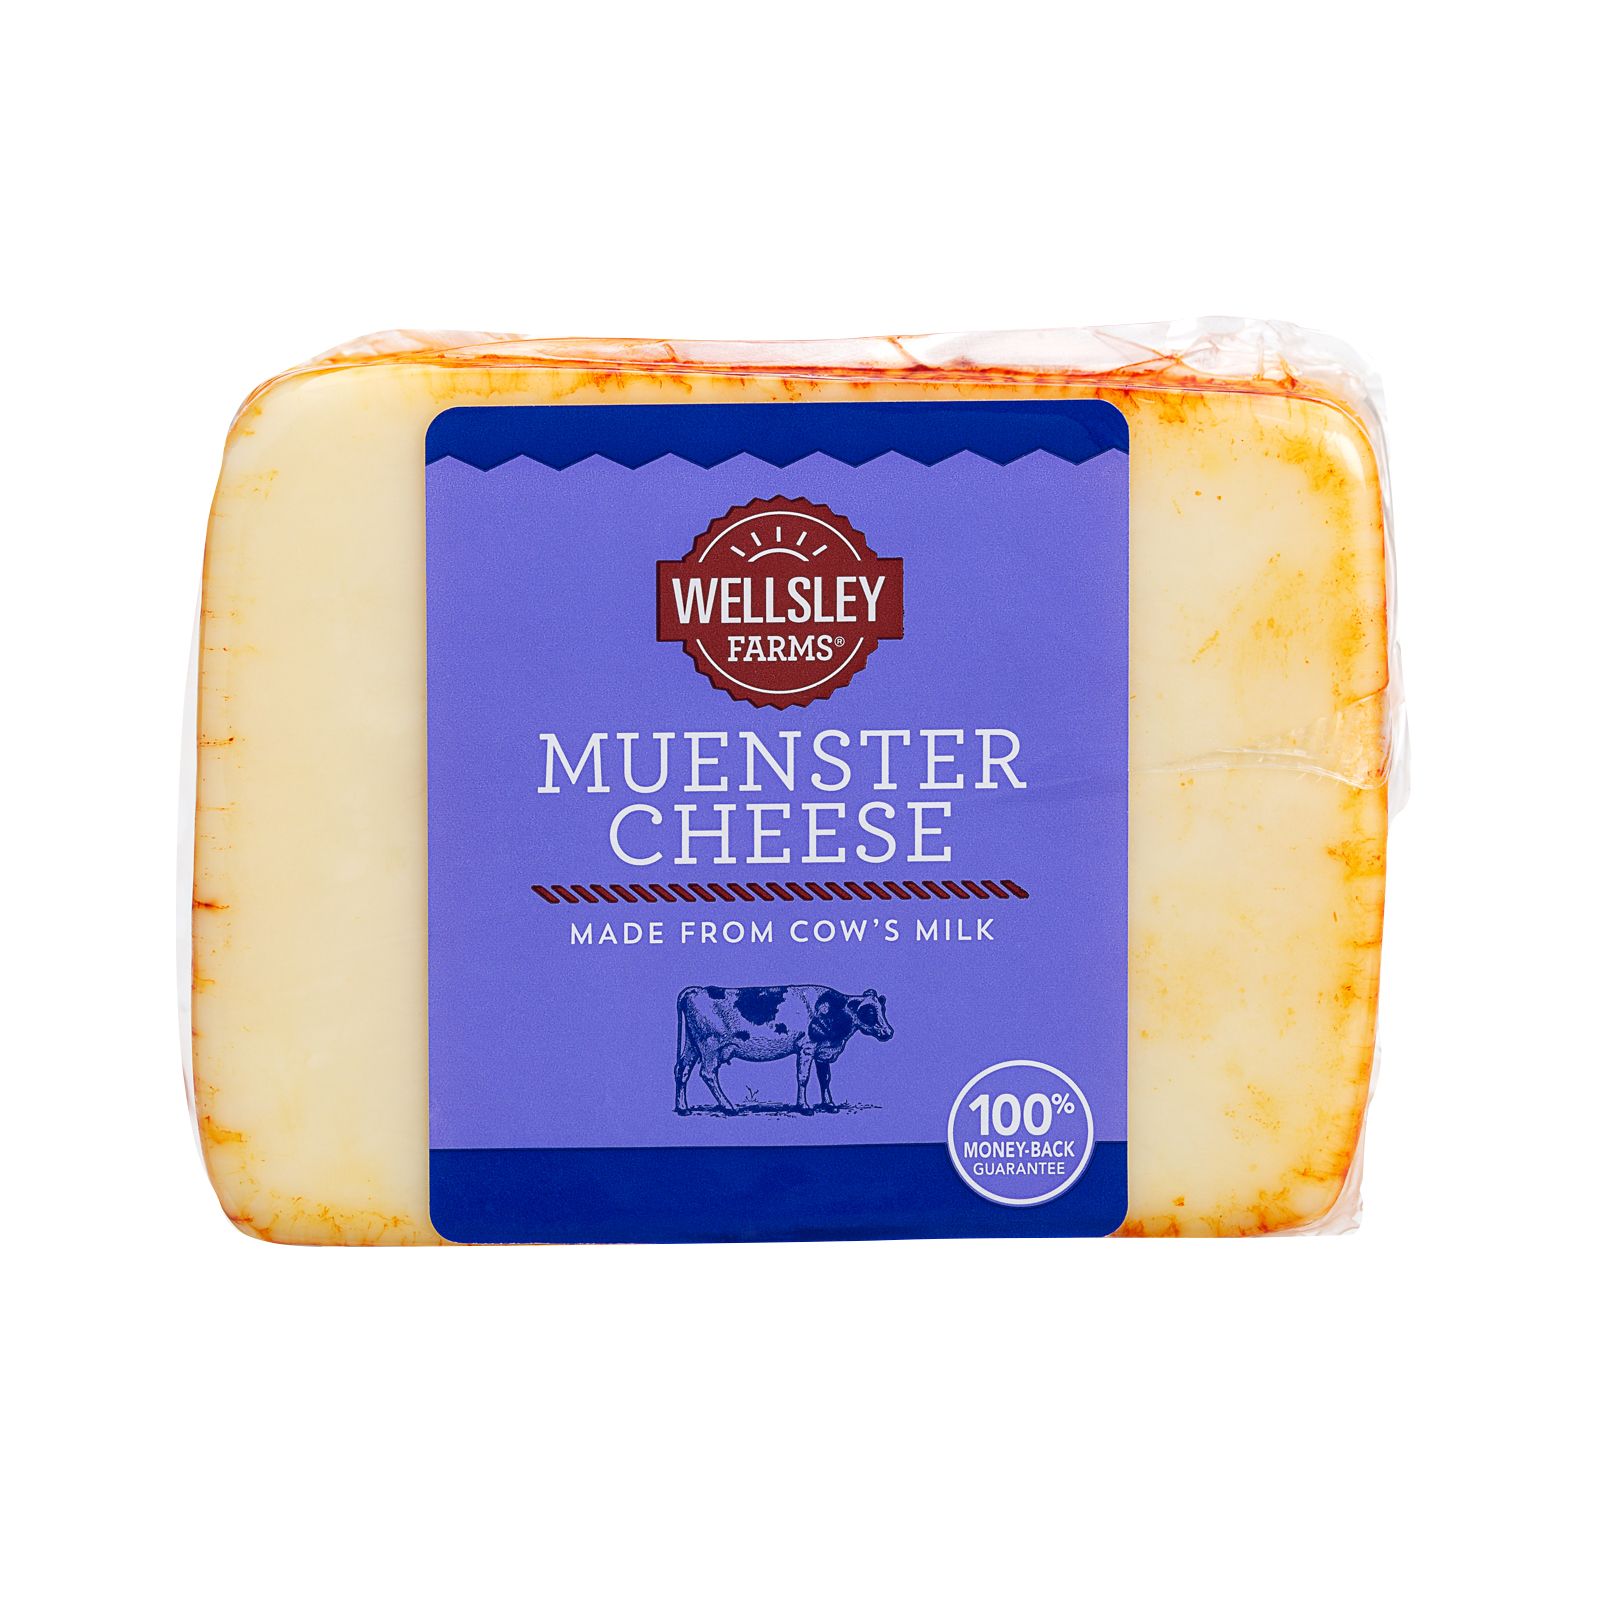 Wellsley Farms Muenster Cheese, 1.25-2 lbs.